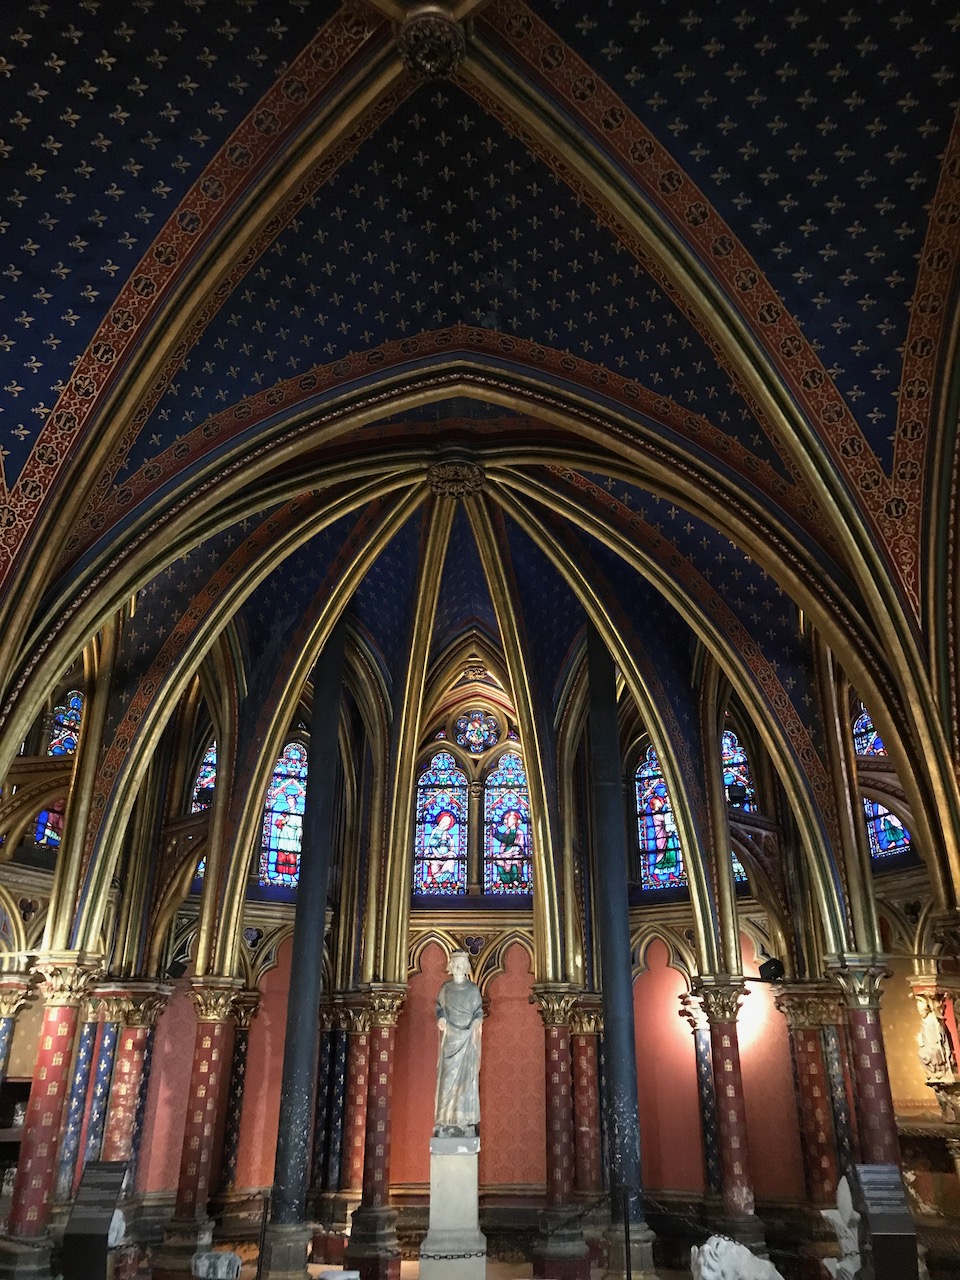 Sainte Chapelle Paris - a great venue for Paris weather December